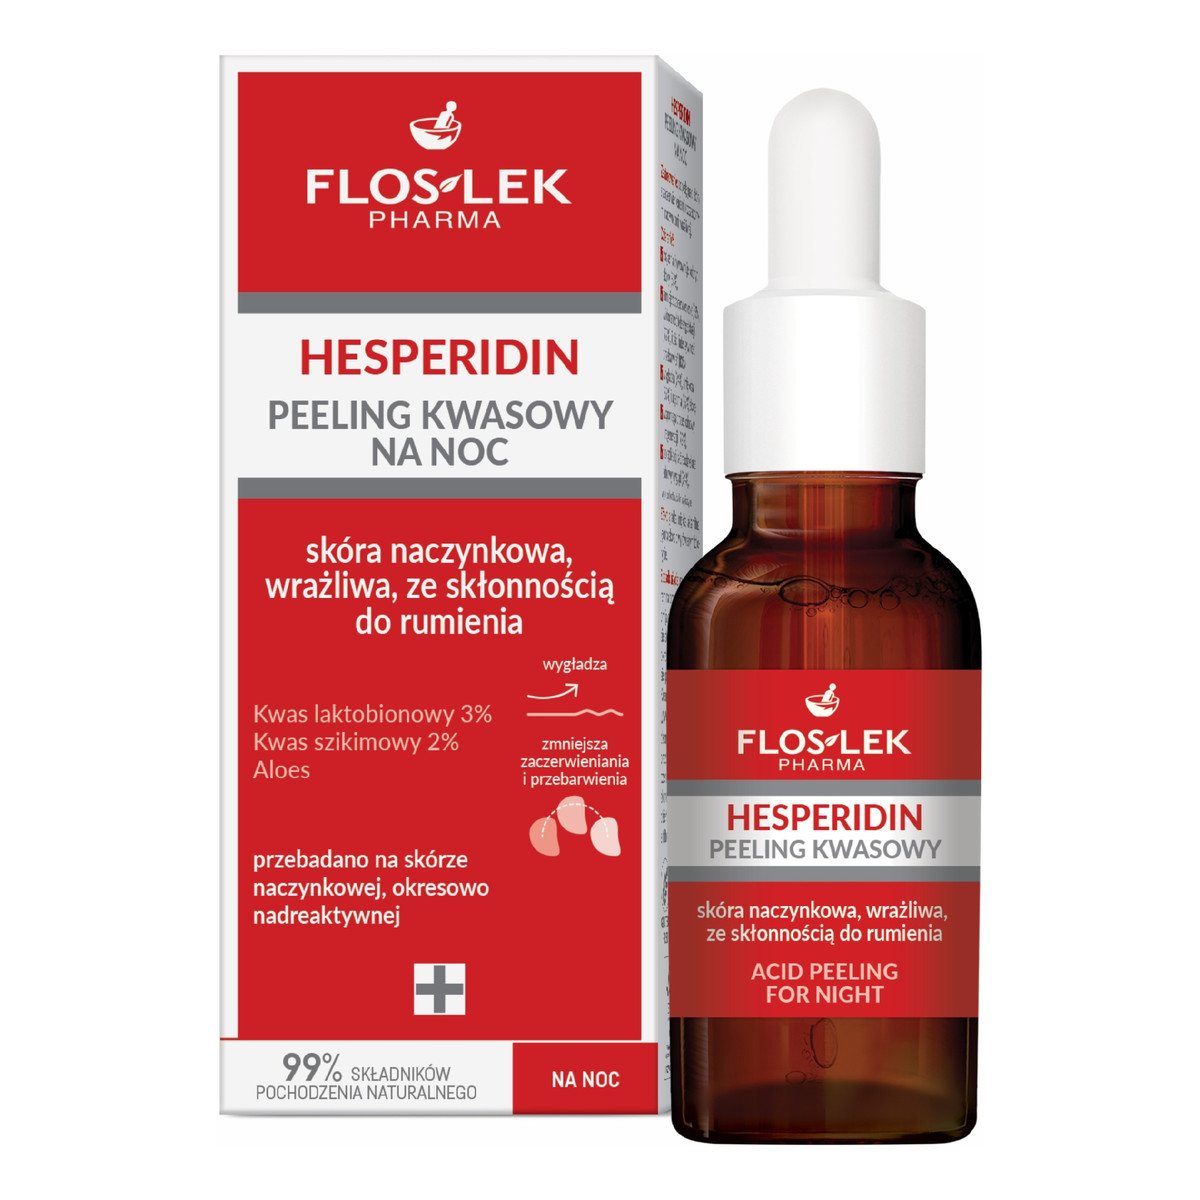 FlosLek Pharma Hesperidin peeling kwasowy na noc-skóra naczynkowa,wrażliwa ze skłonnością do rumienia 30ml